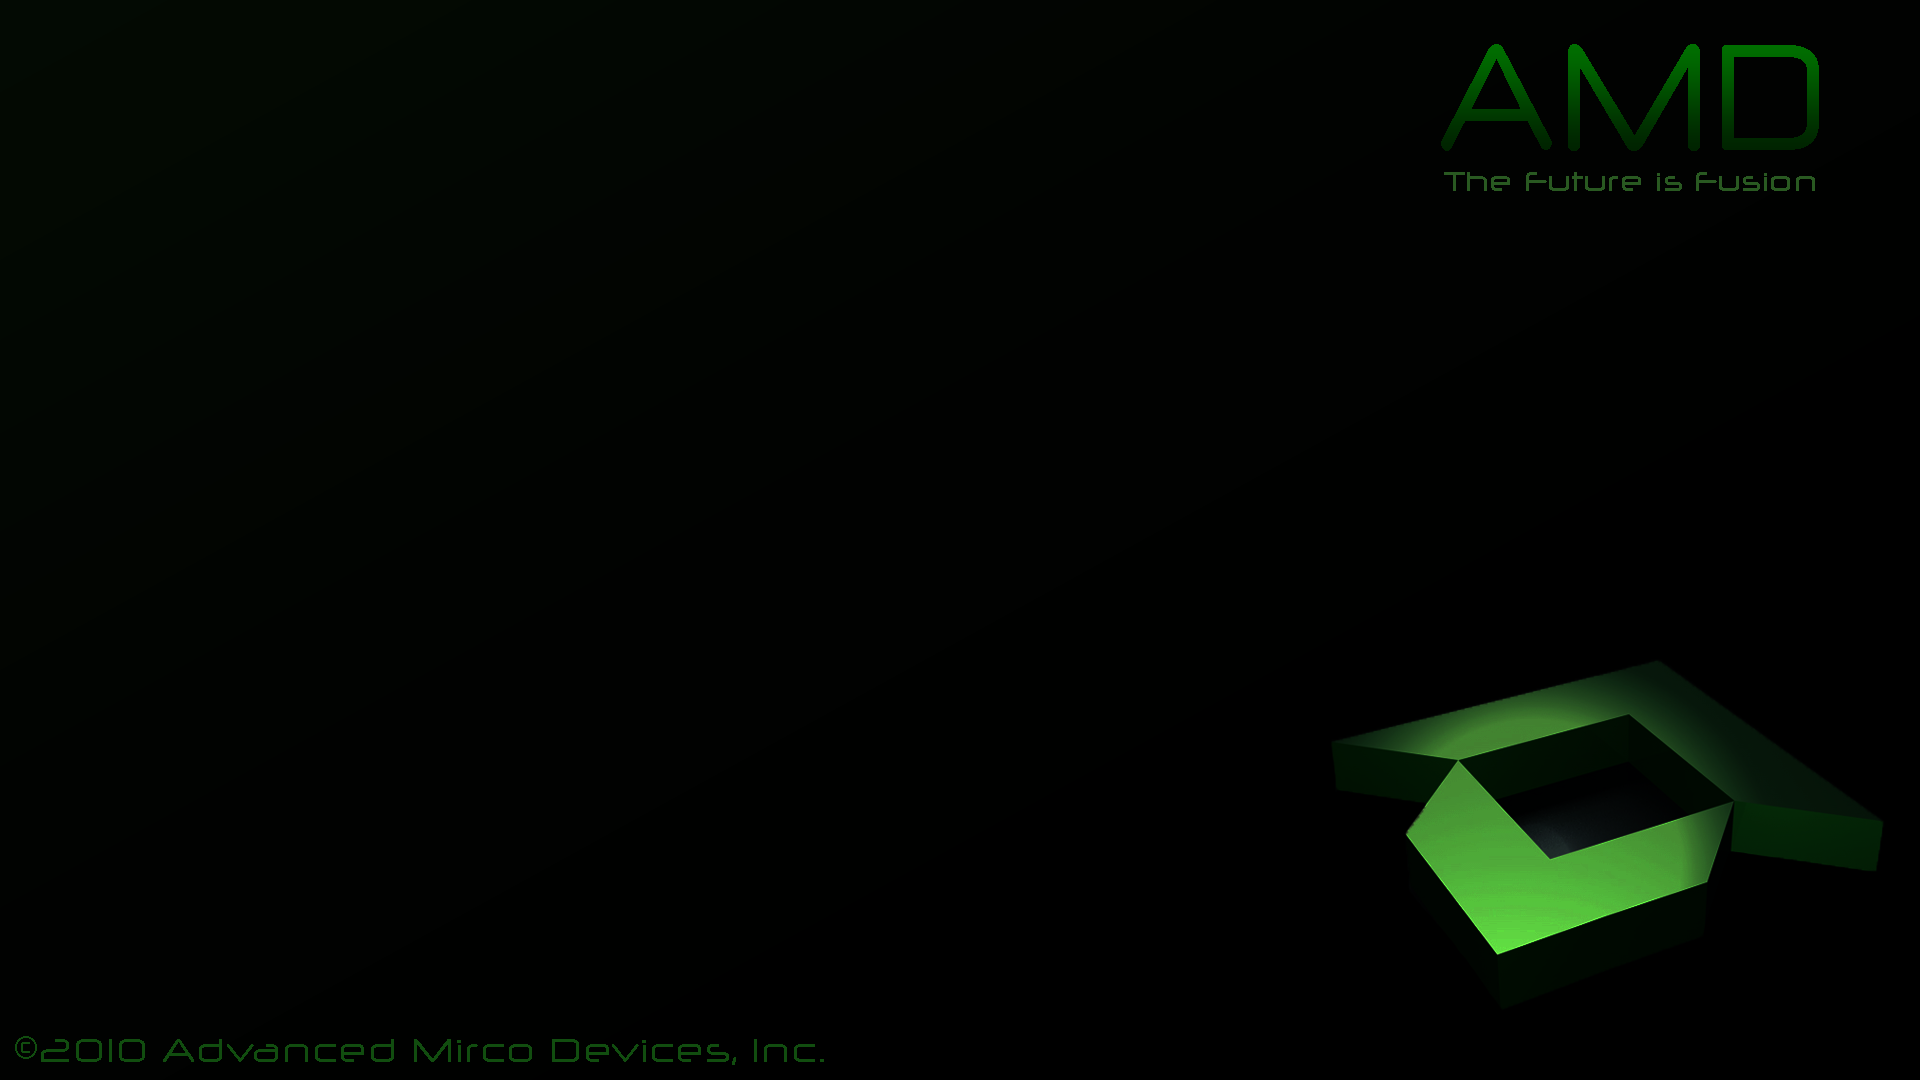 AMD Logo Wallpaper - WallpaperSafari